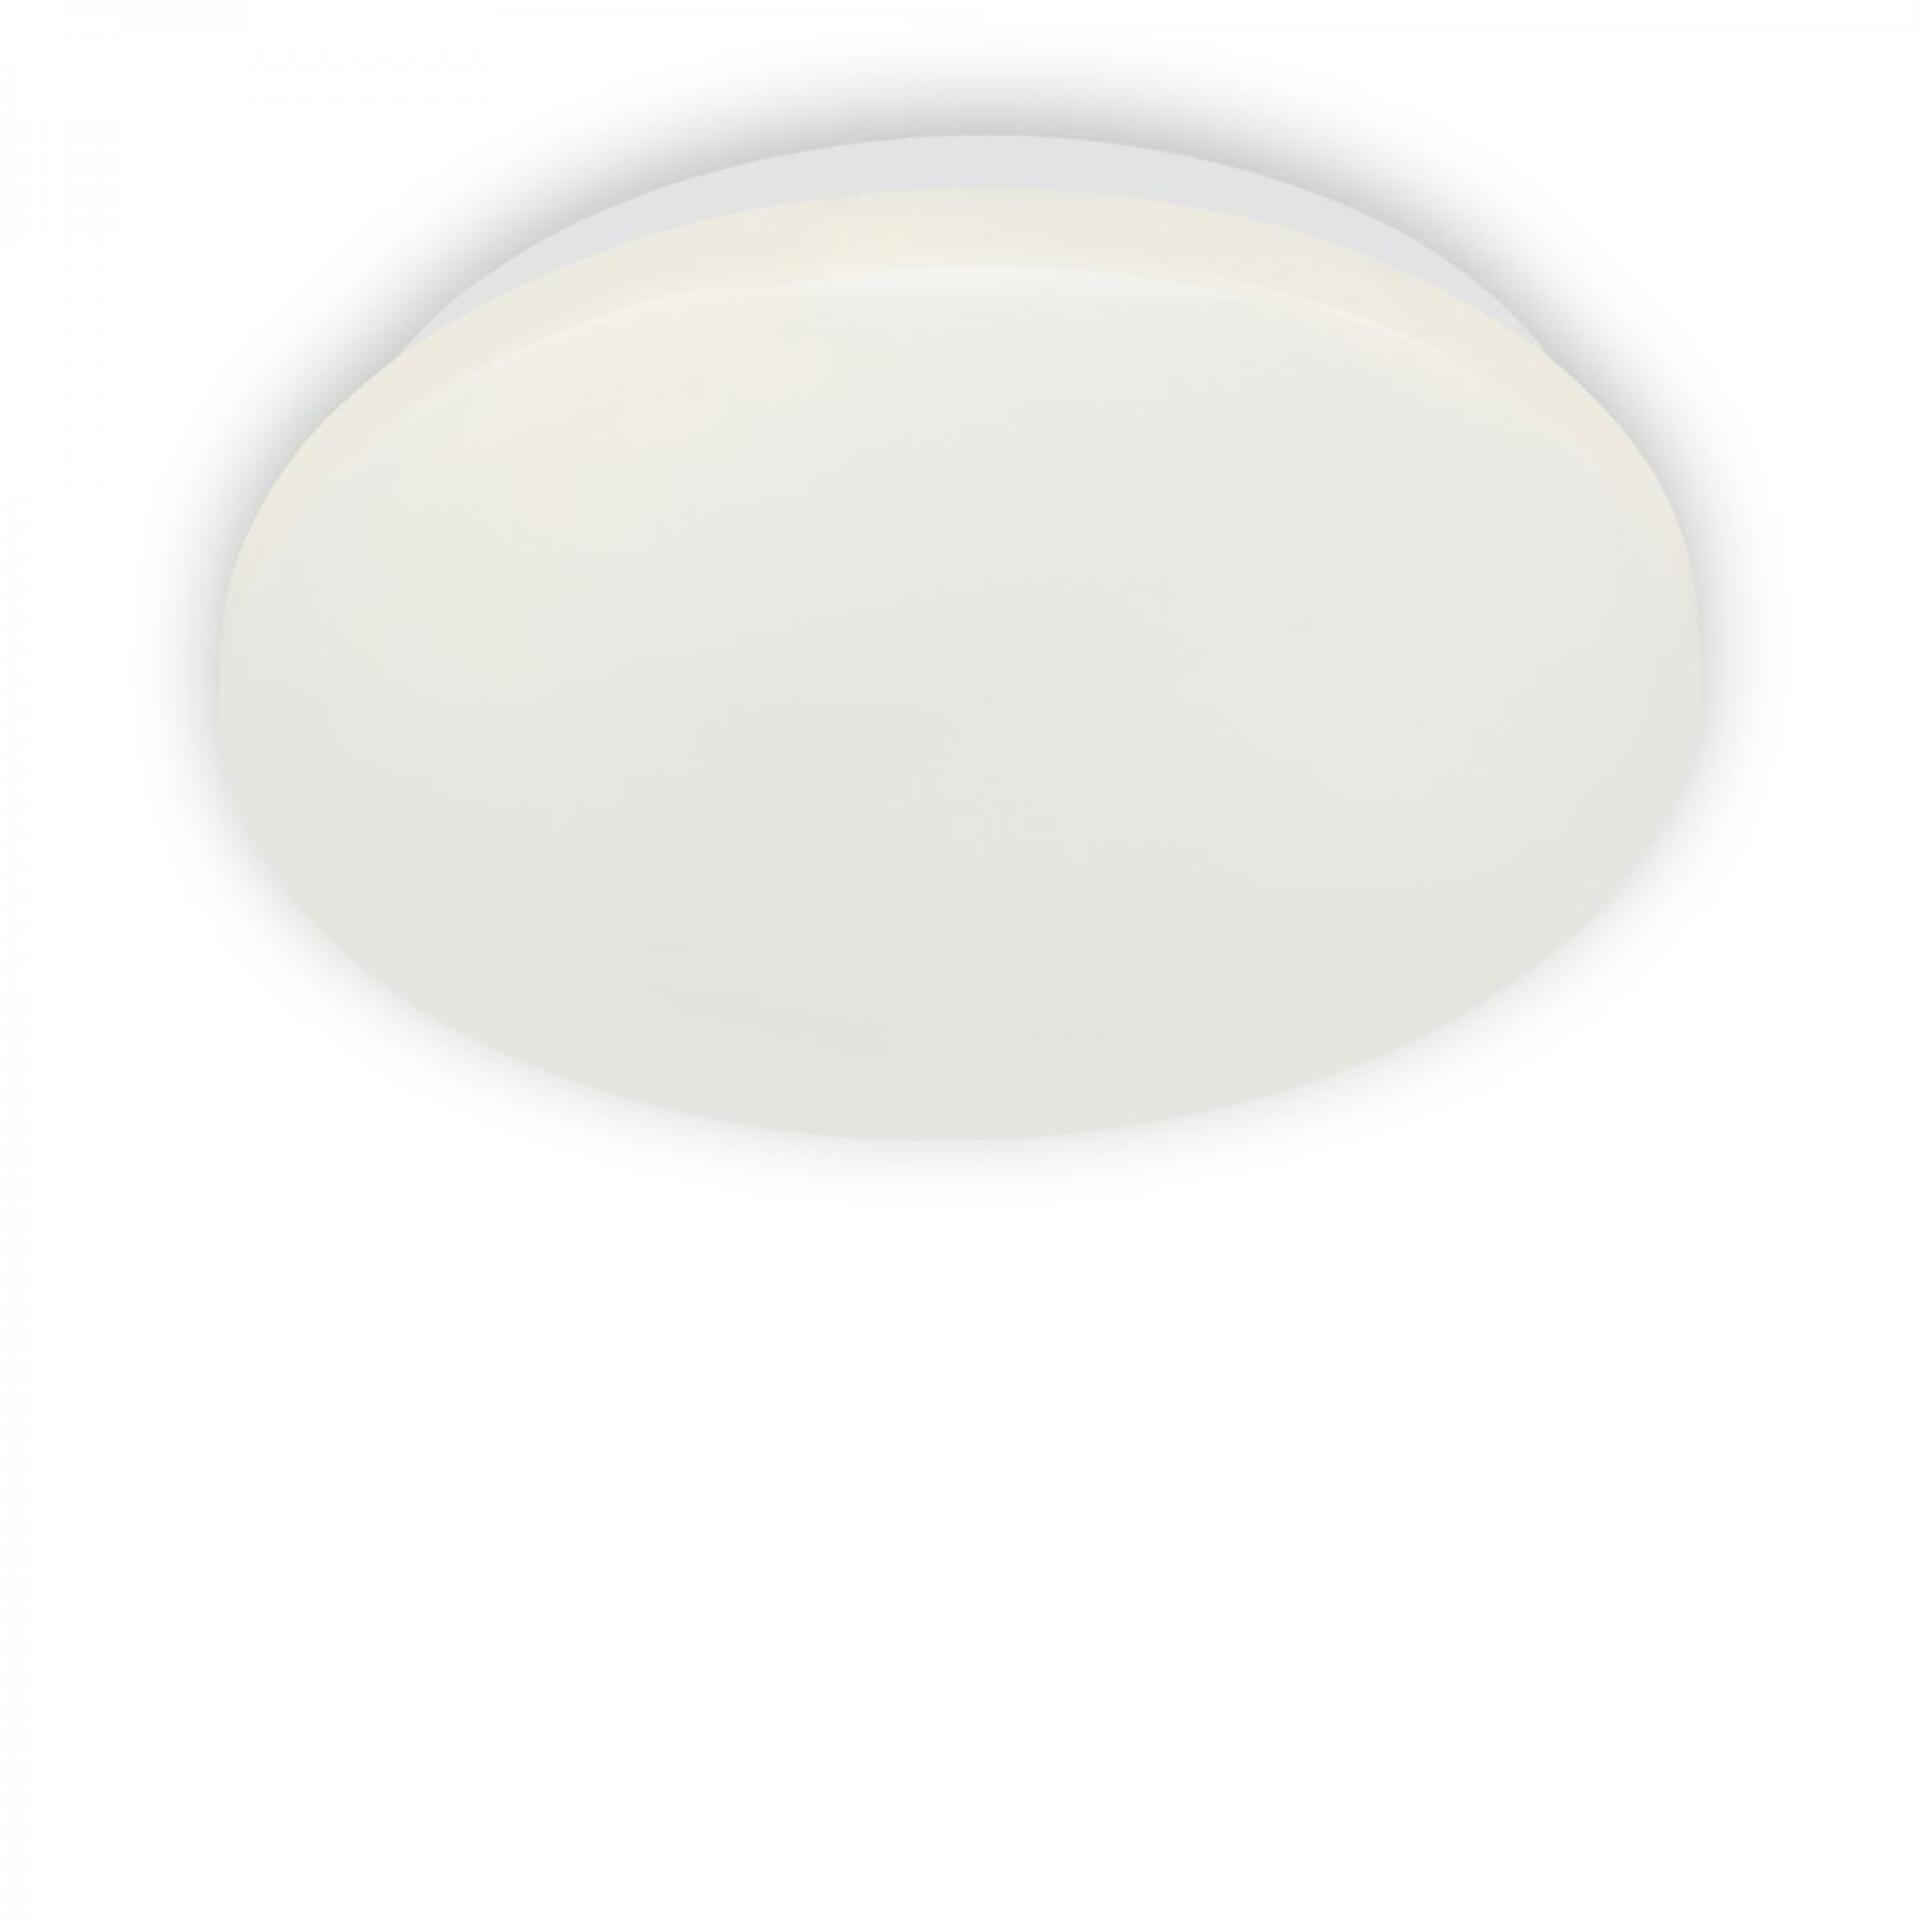 BRILONER LED stropní svítidlo, pr. 28,8 cm, 12 W, bílé BRI 3404-116